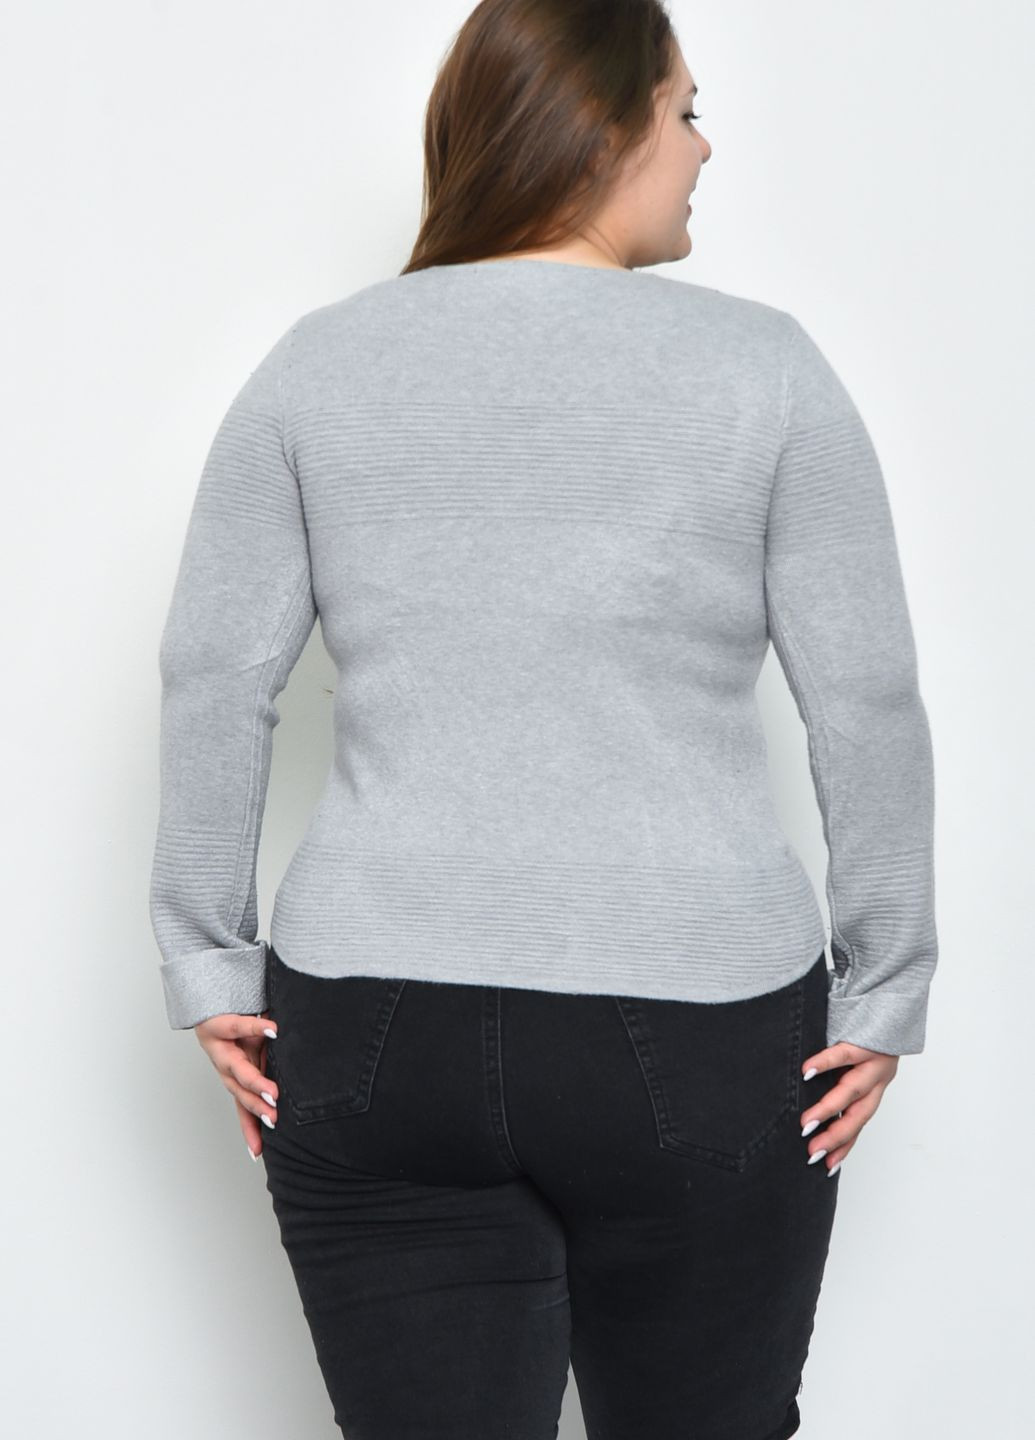 Серый зимний свитер женский серого цвета пуловер Let's Shop